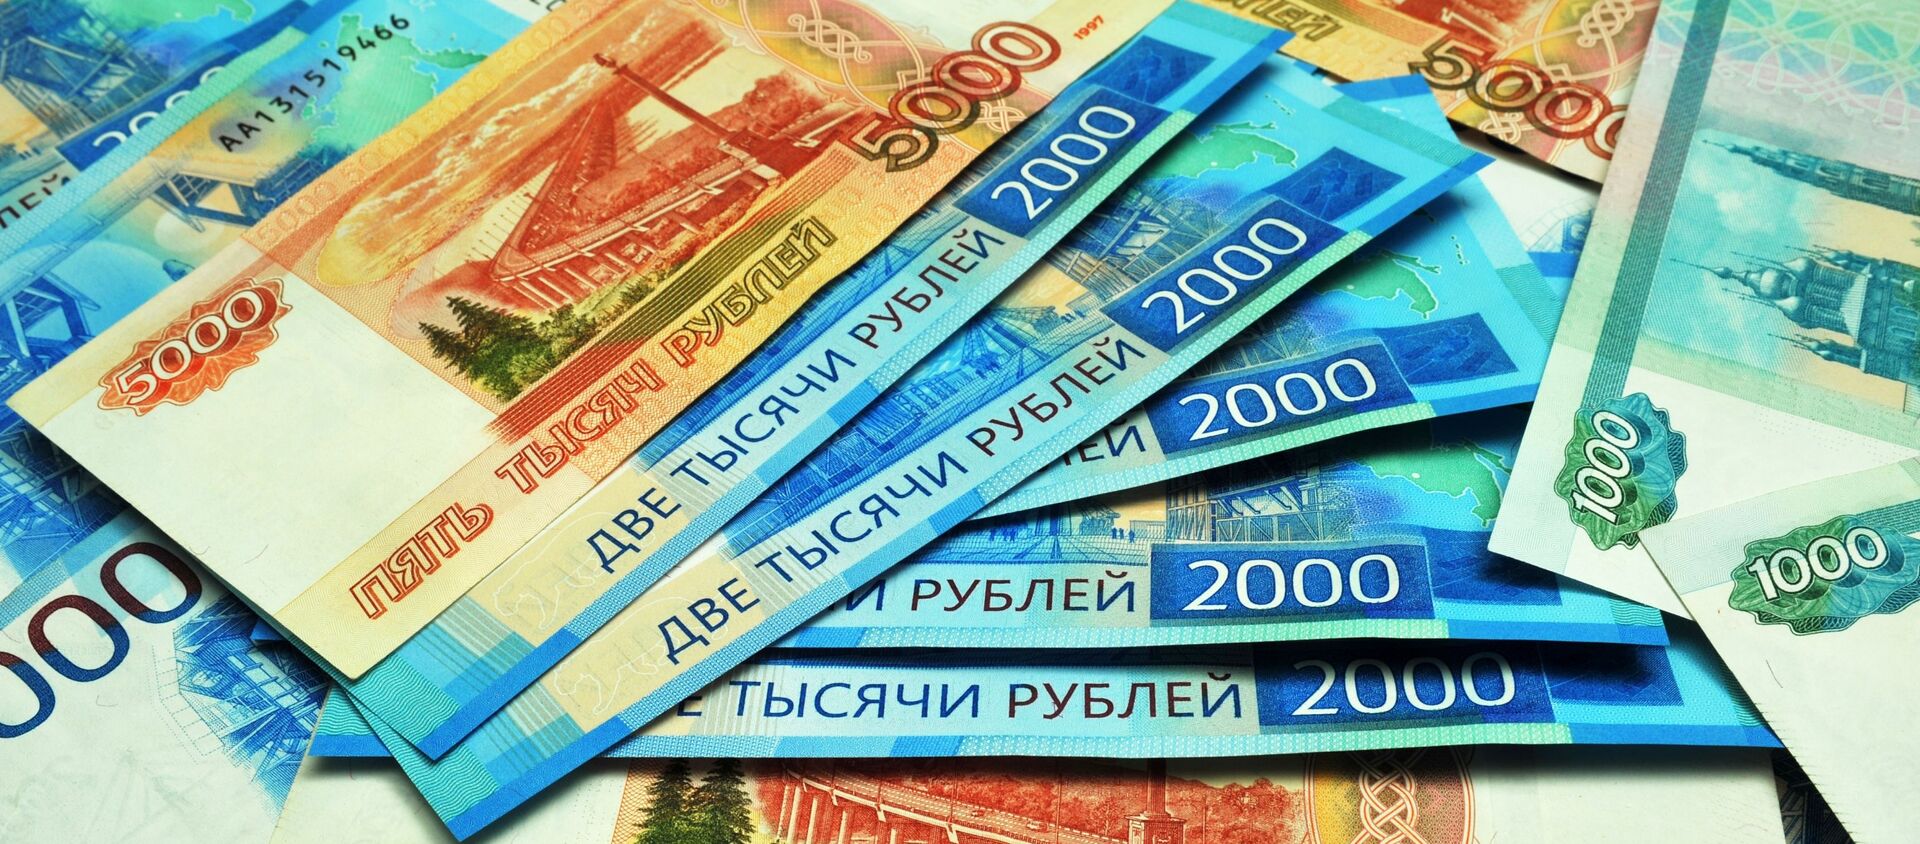 Банкноты номиналом 1000, 2000 и 5000 рублей. - Sputnik Абхазия, 1920, 04.07.2020